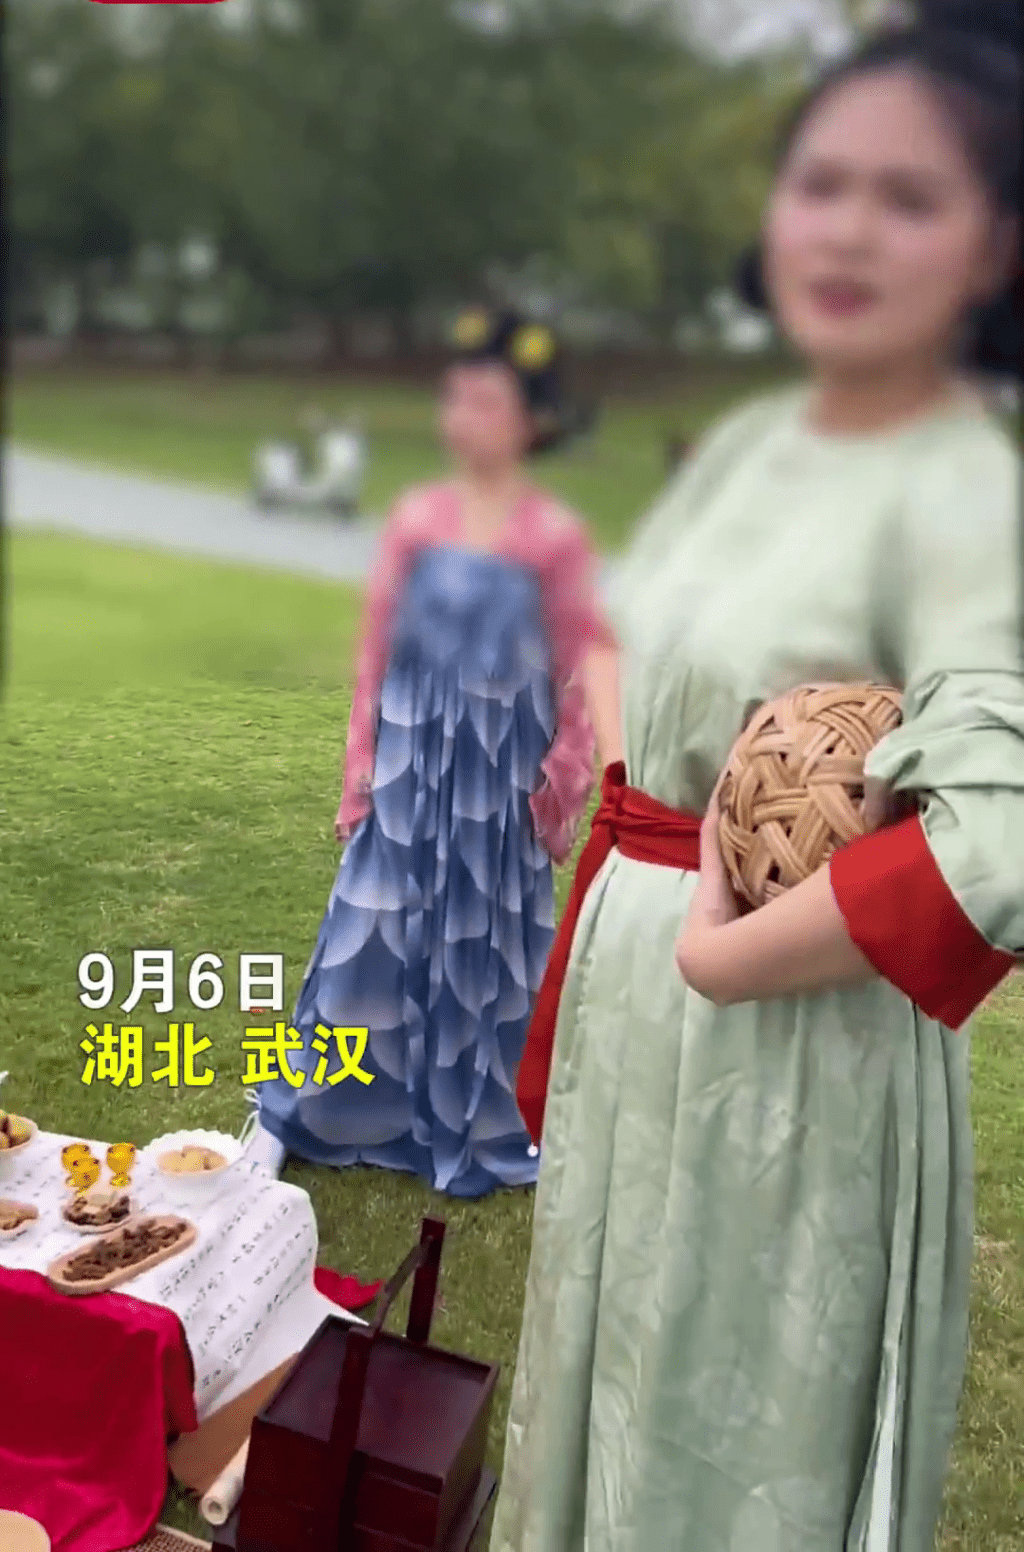 一批旅客穿著汉服到武汉盘龙城考古遗址公园聚会、拍照，期间竟遭到公园工作人员驱赶。时间视频截图